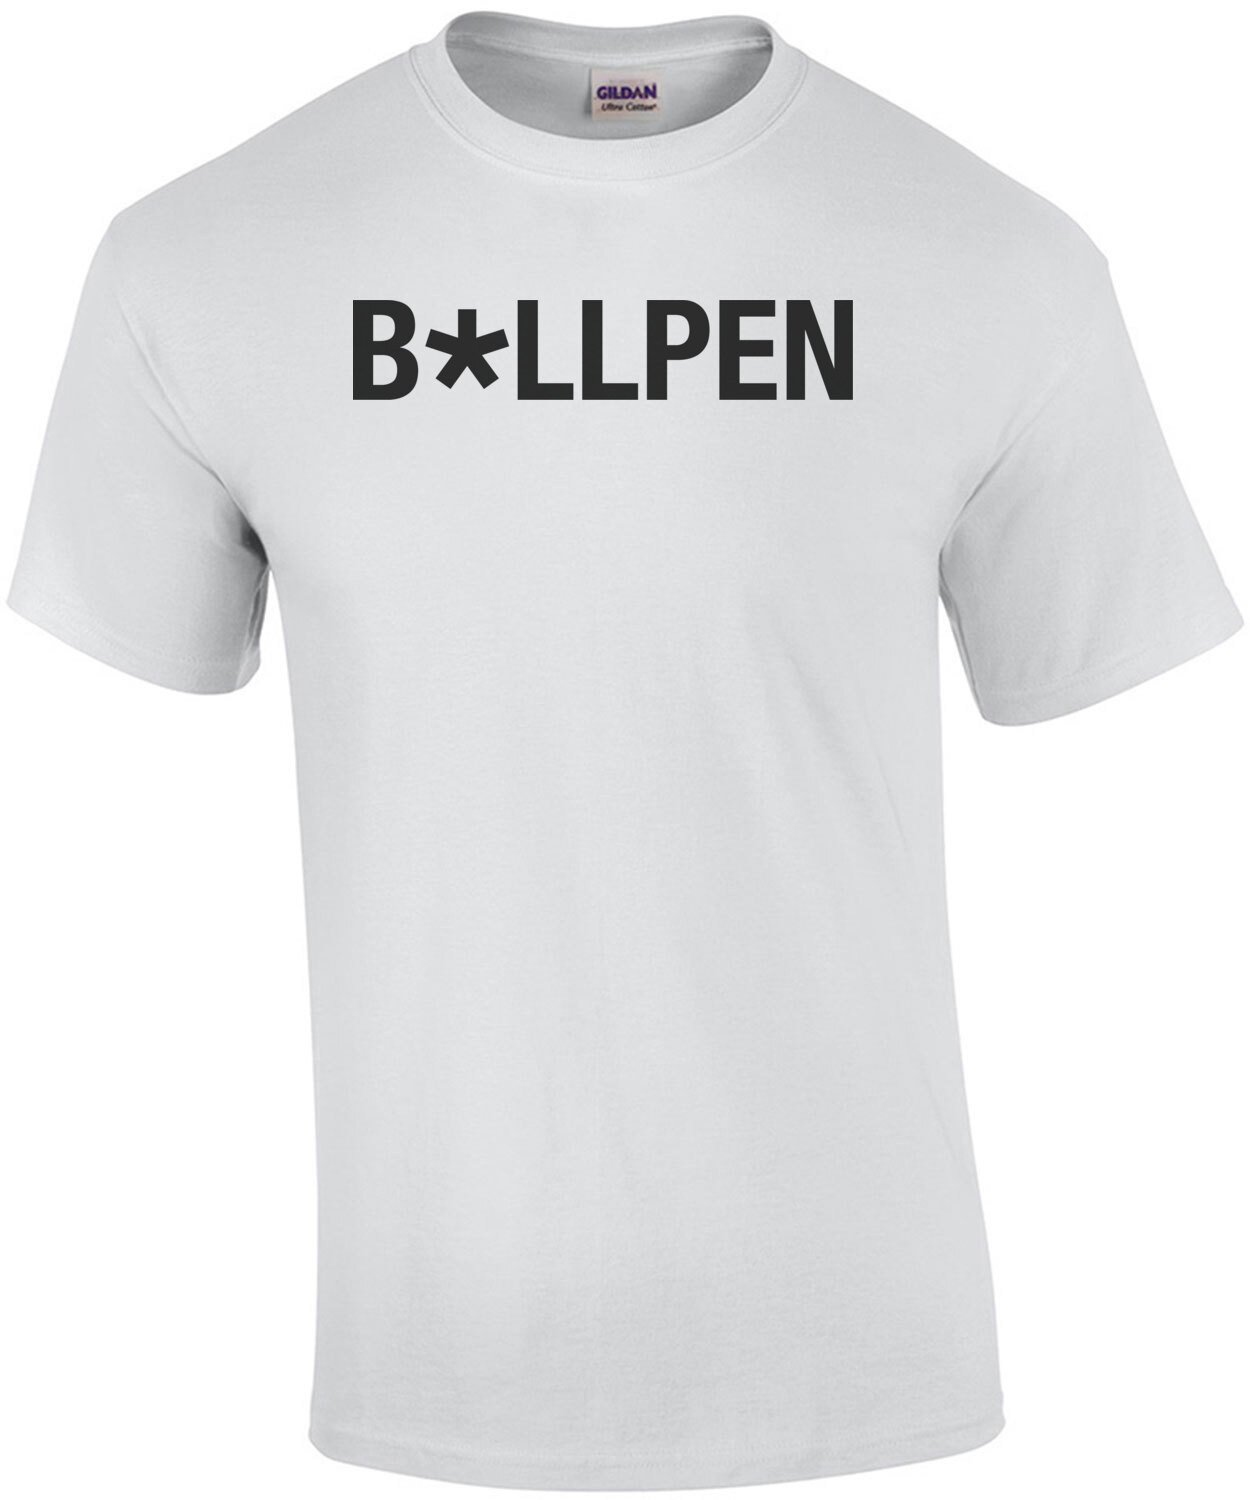 B*llpen Censored Bullpen Shirt